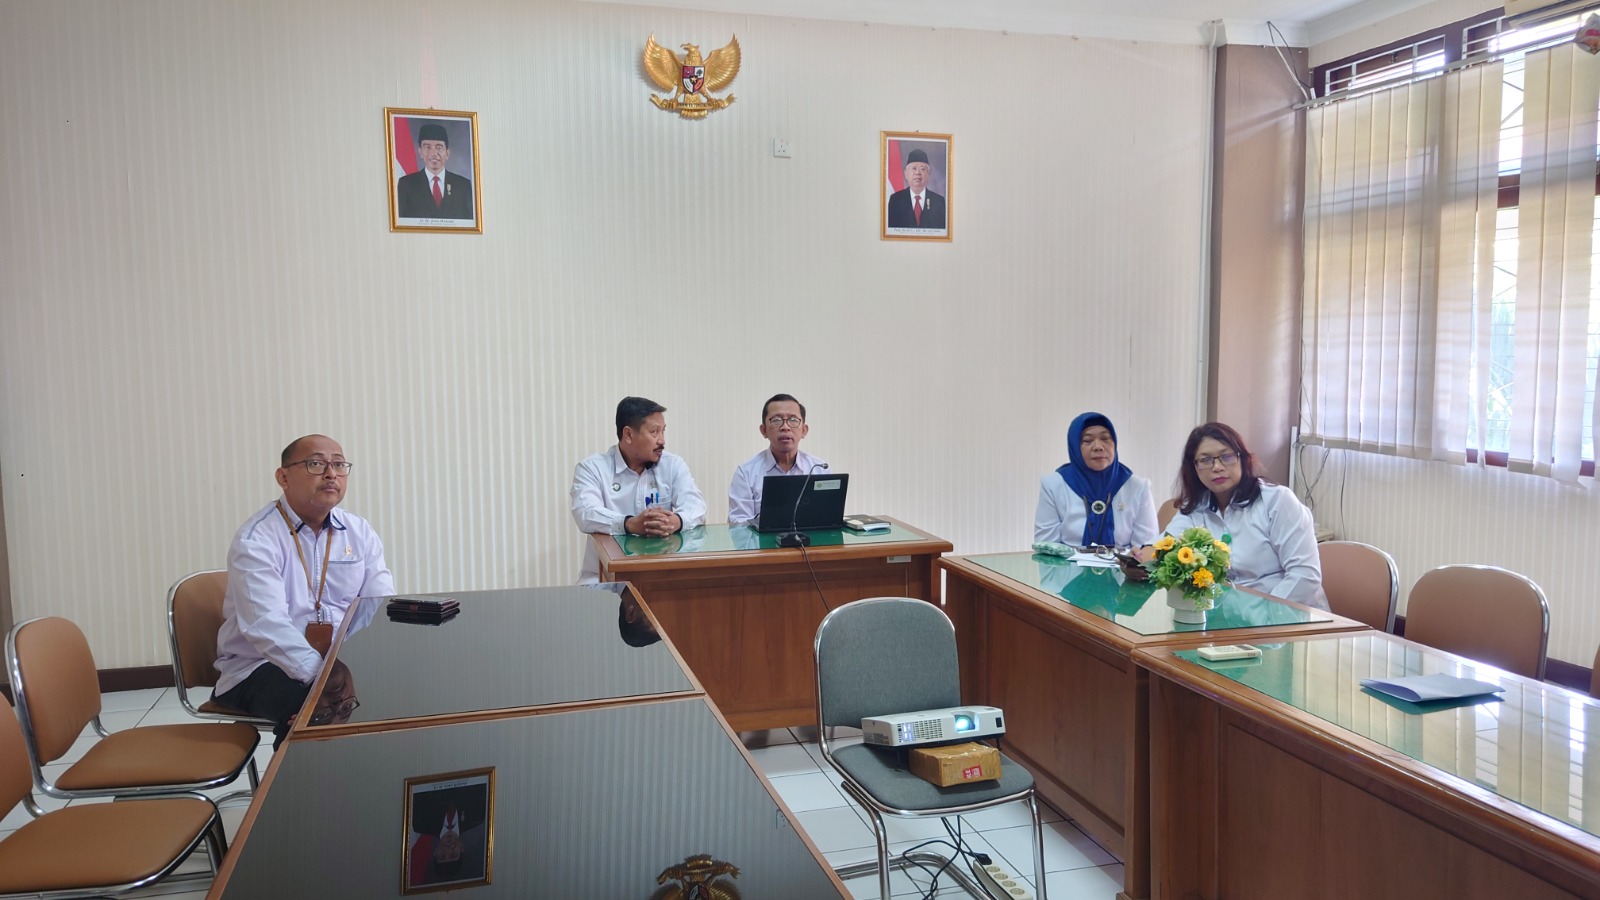 Pengadilan Negeri Yogyakarta Mengikuti Webinar Pemantauan Pengadilan Tahun 2022 bersama SAPDA